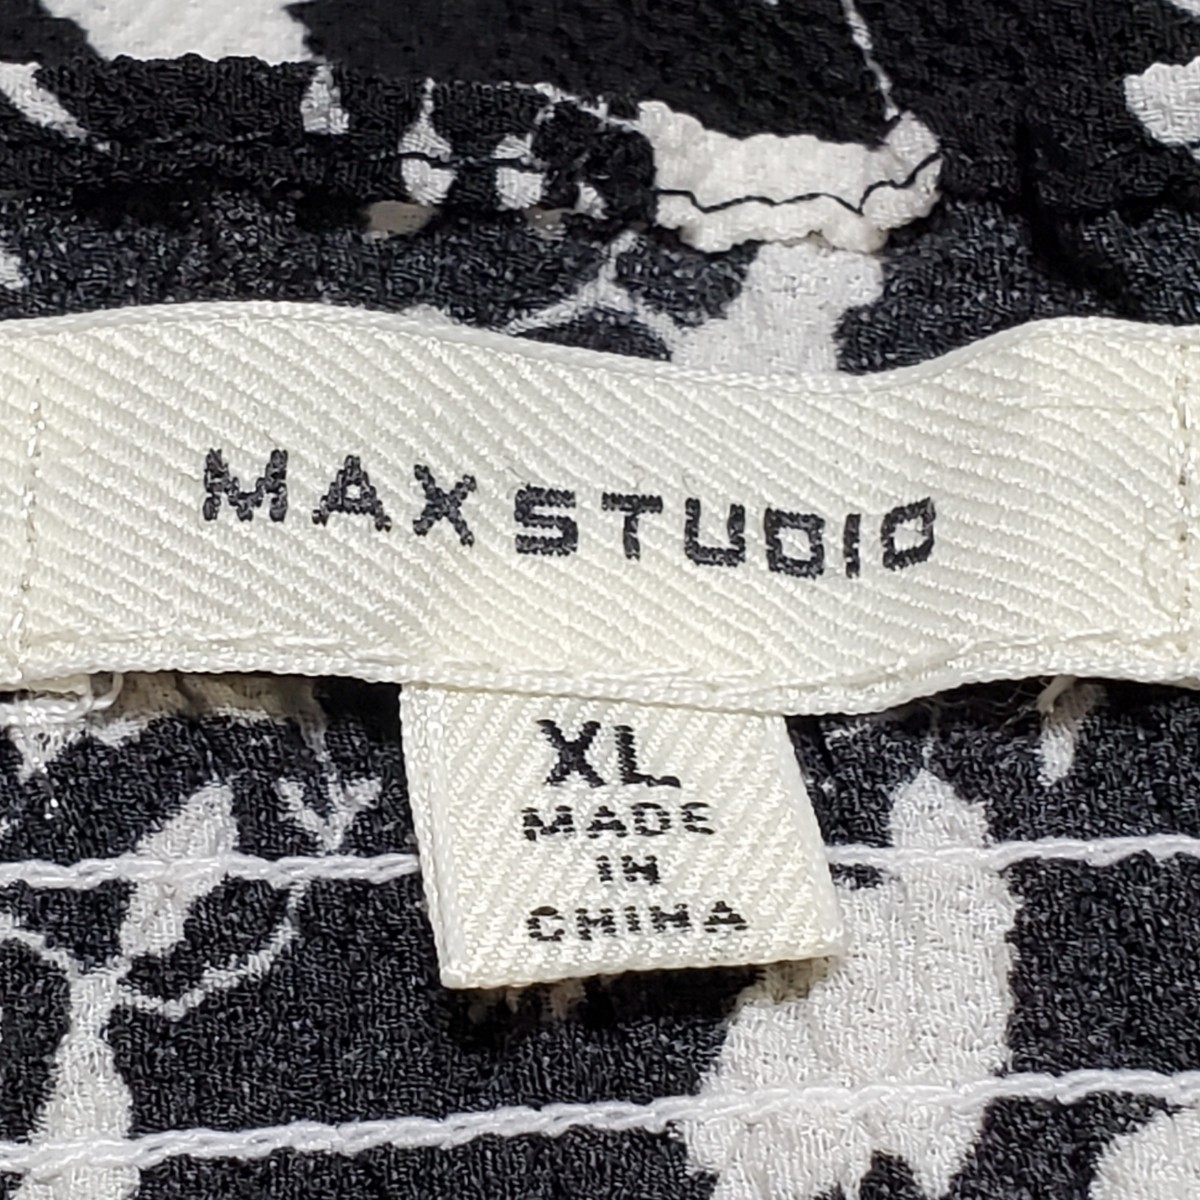 MAXSTUDIO Max Studio черный × белый flair длинная юбка размер надпись XL( примерно 3L размер соответствует )